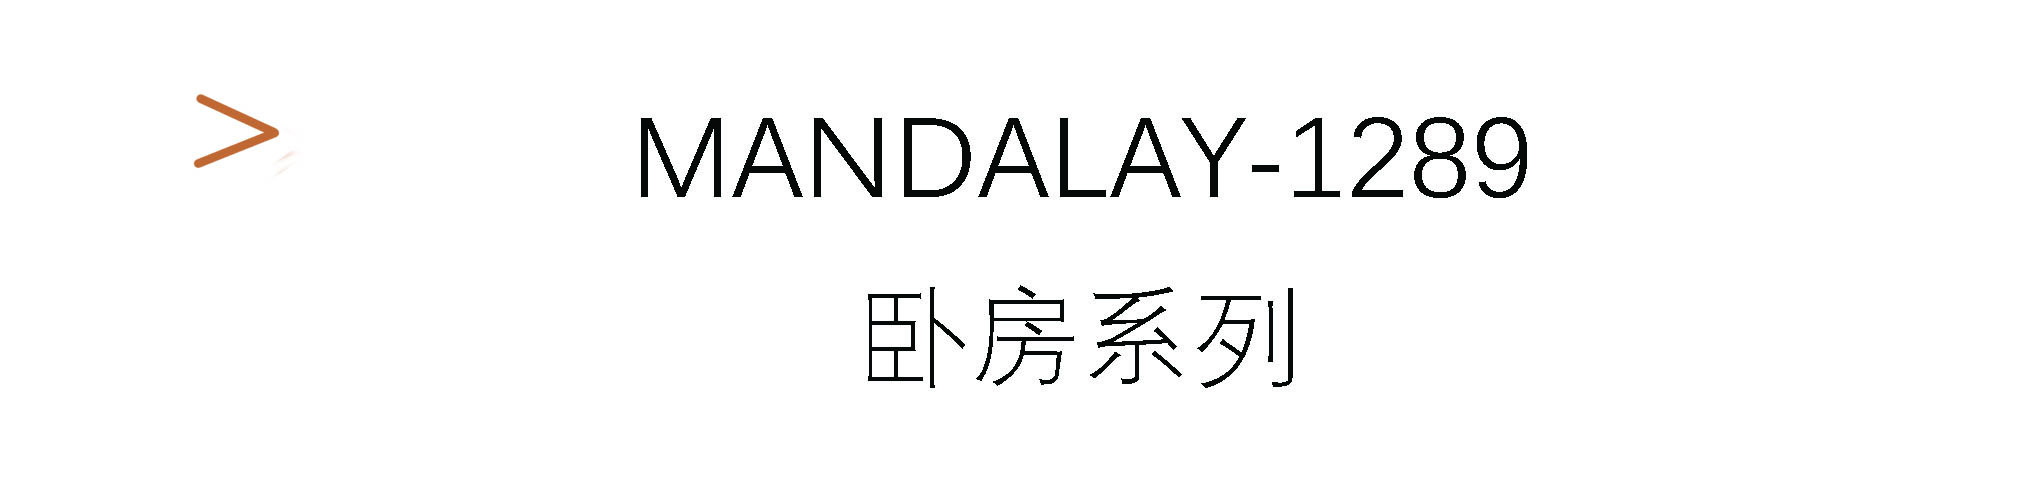 Mandalay-1289